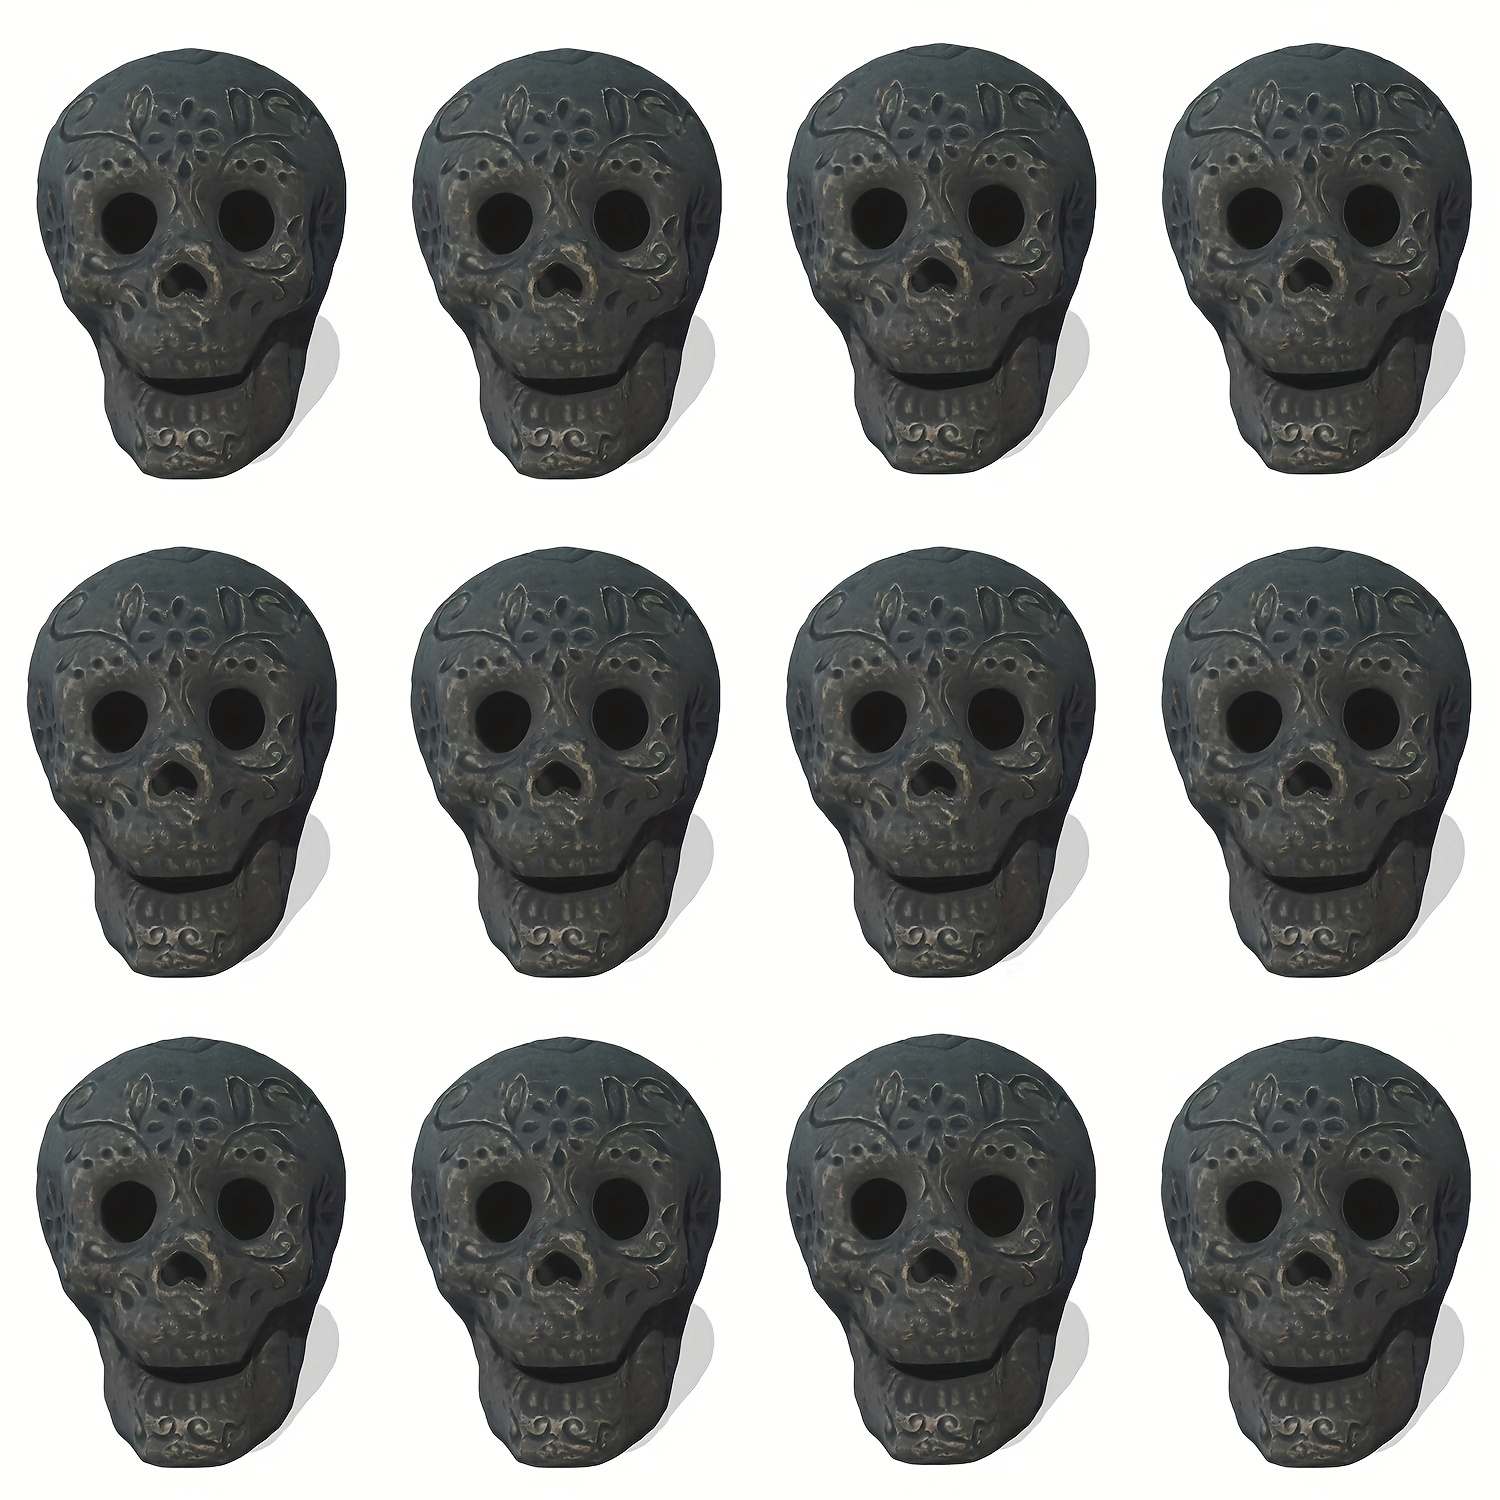 3pcs Calaveras decorativas para fuegos de gas y pozos de fuego a prueba de  fuego imitado cráneo humano cerámica reutilizable calaveras de pozo de  fuego Halloween decoración cráneo en forma de fuego